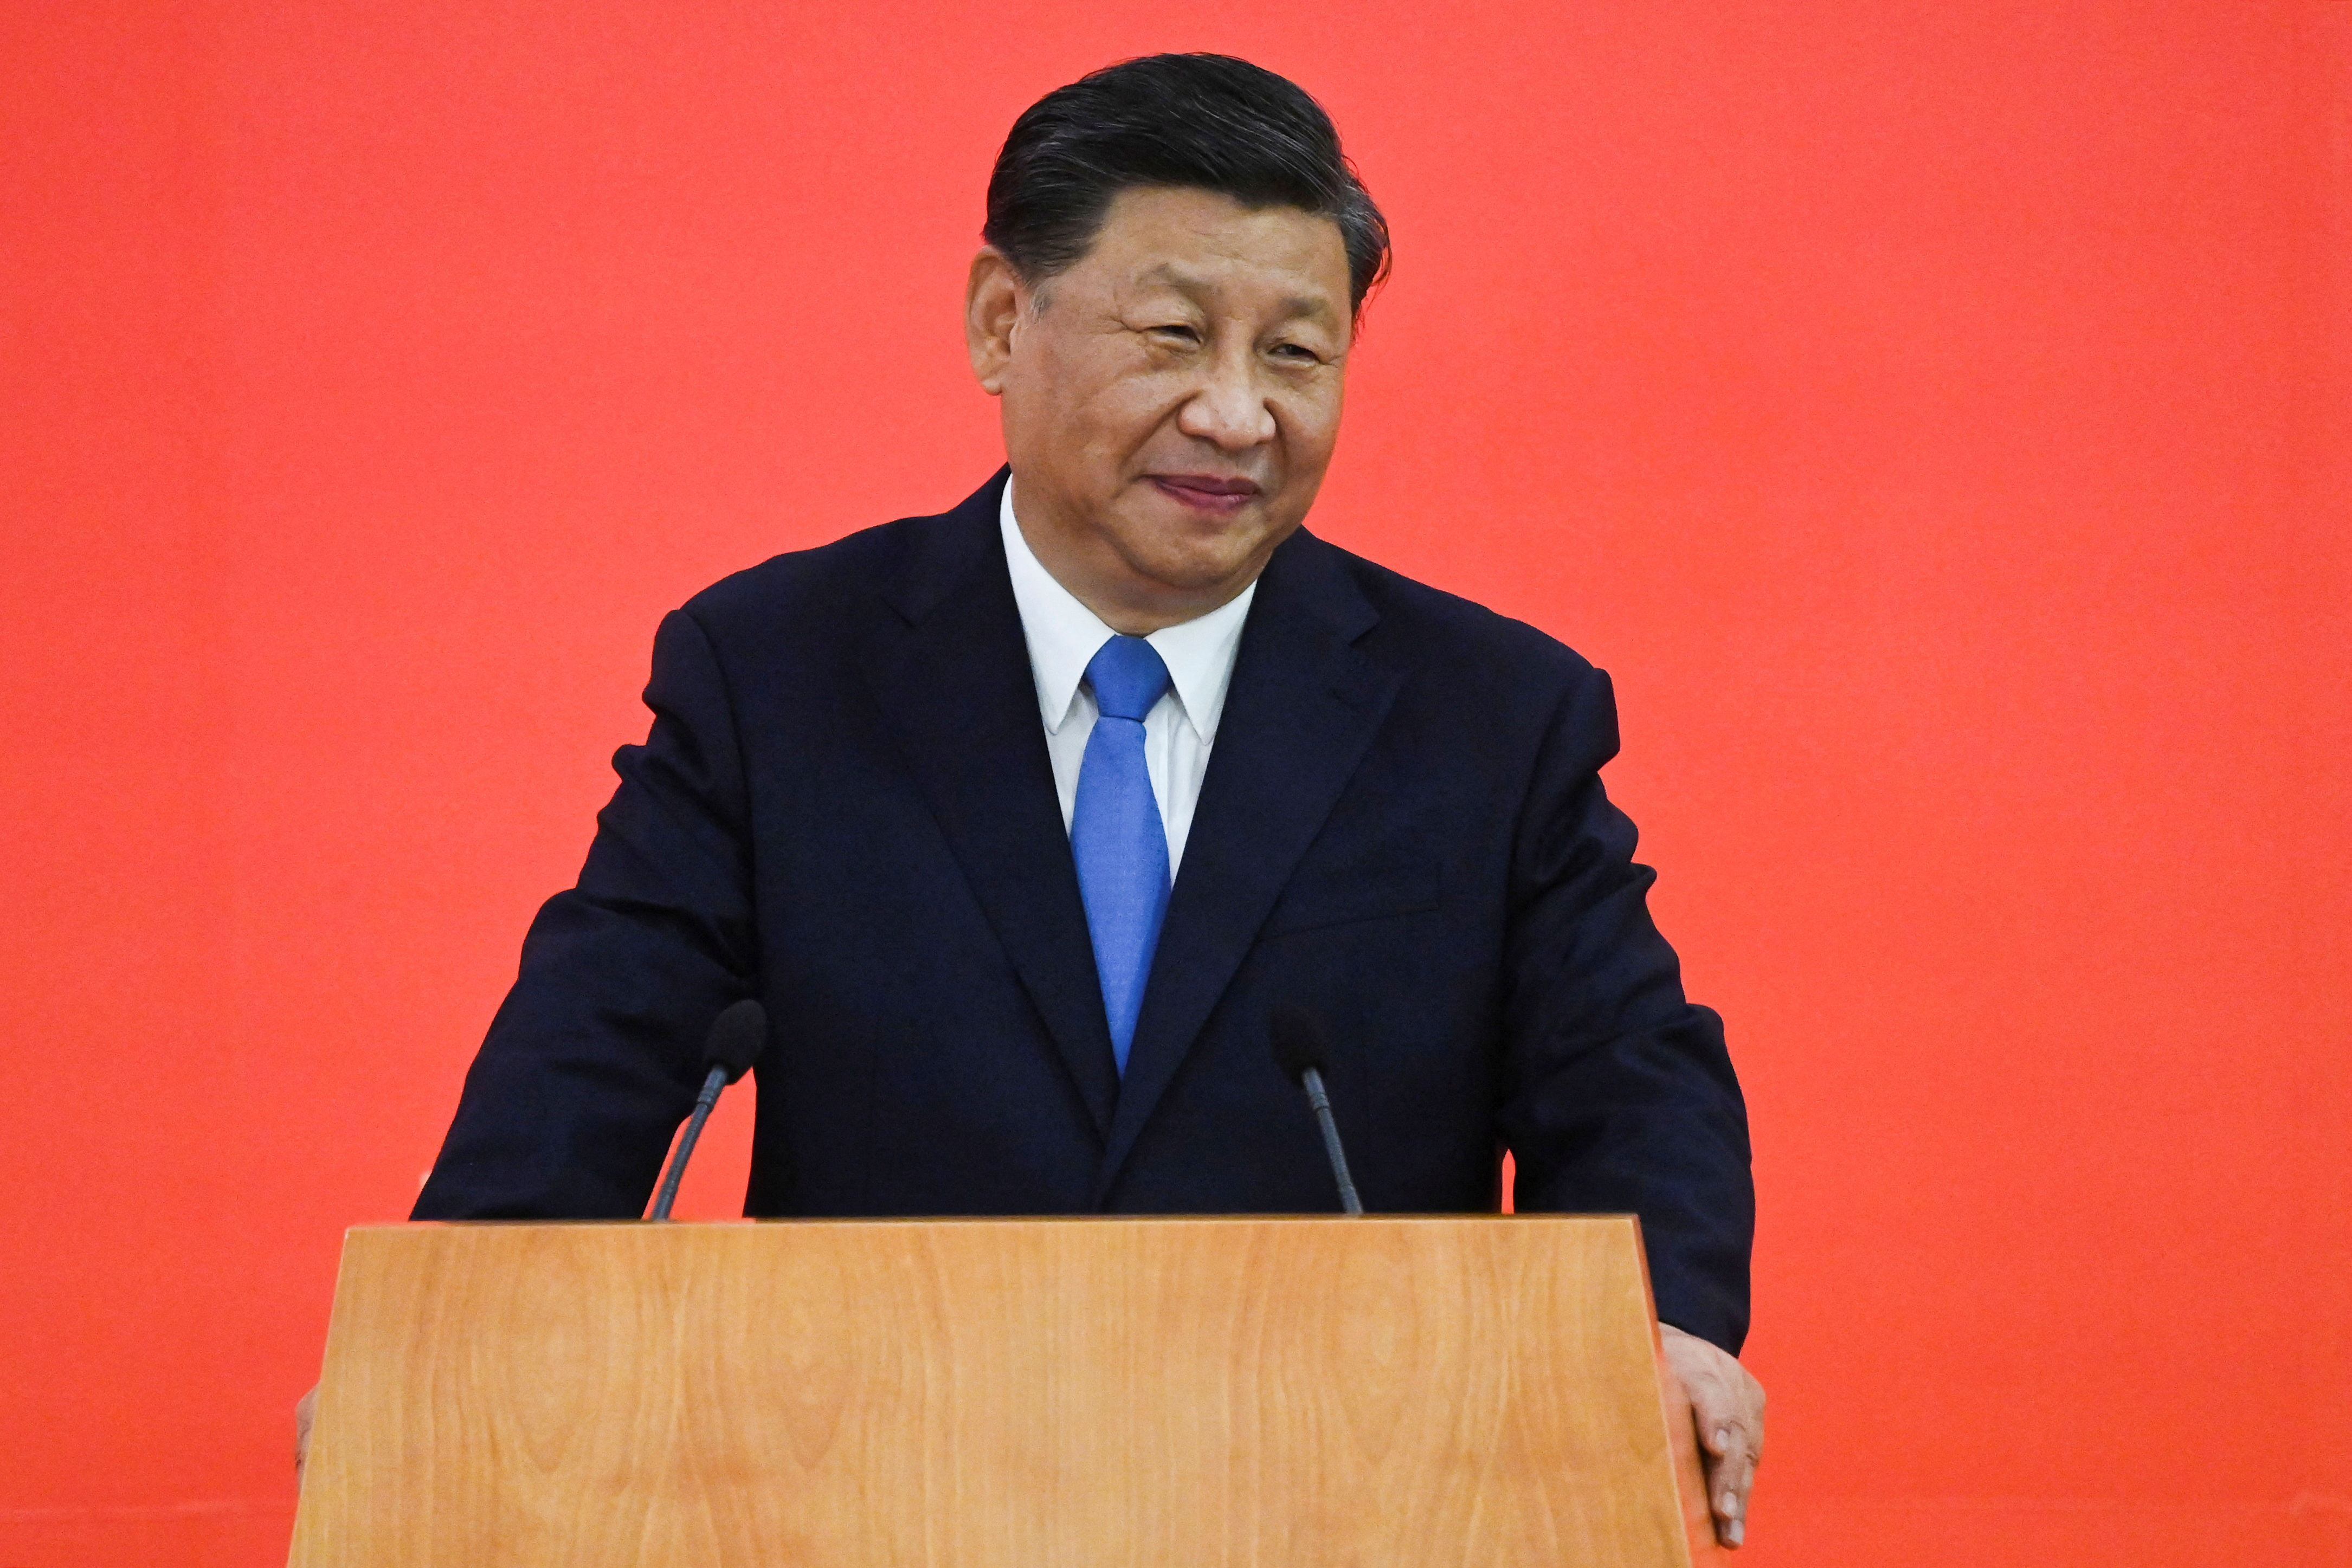 El presidente de China, Xi Jinping, habla a su llegada en tren de alta velocidad, antes del 25º aniversario del traspaso de la antigua colonia británica al gobierno chino, en Hong Kong, China, el 30 de junio de 2022. Selim Chtayti/Pool vía REUTERS